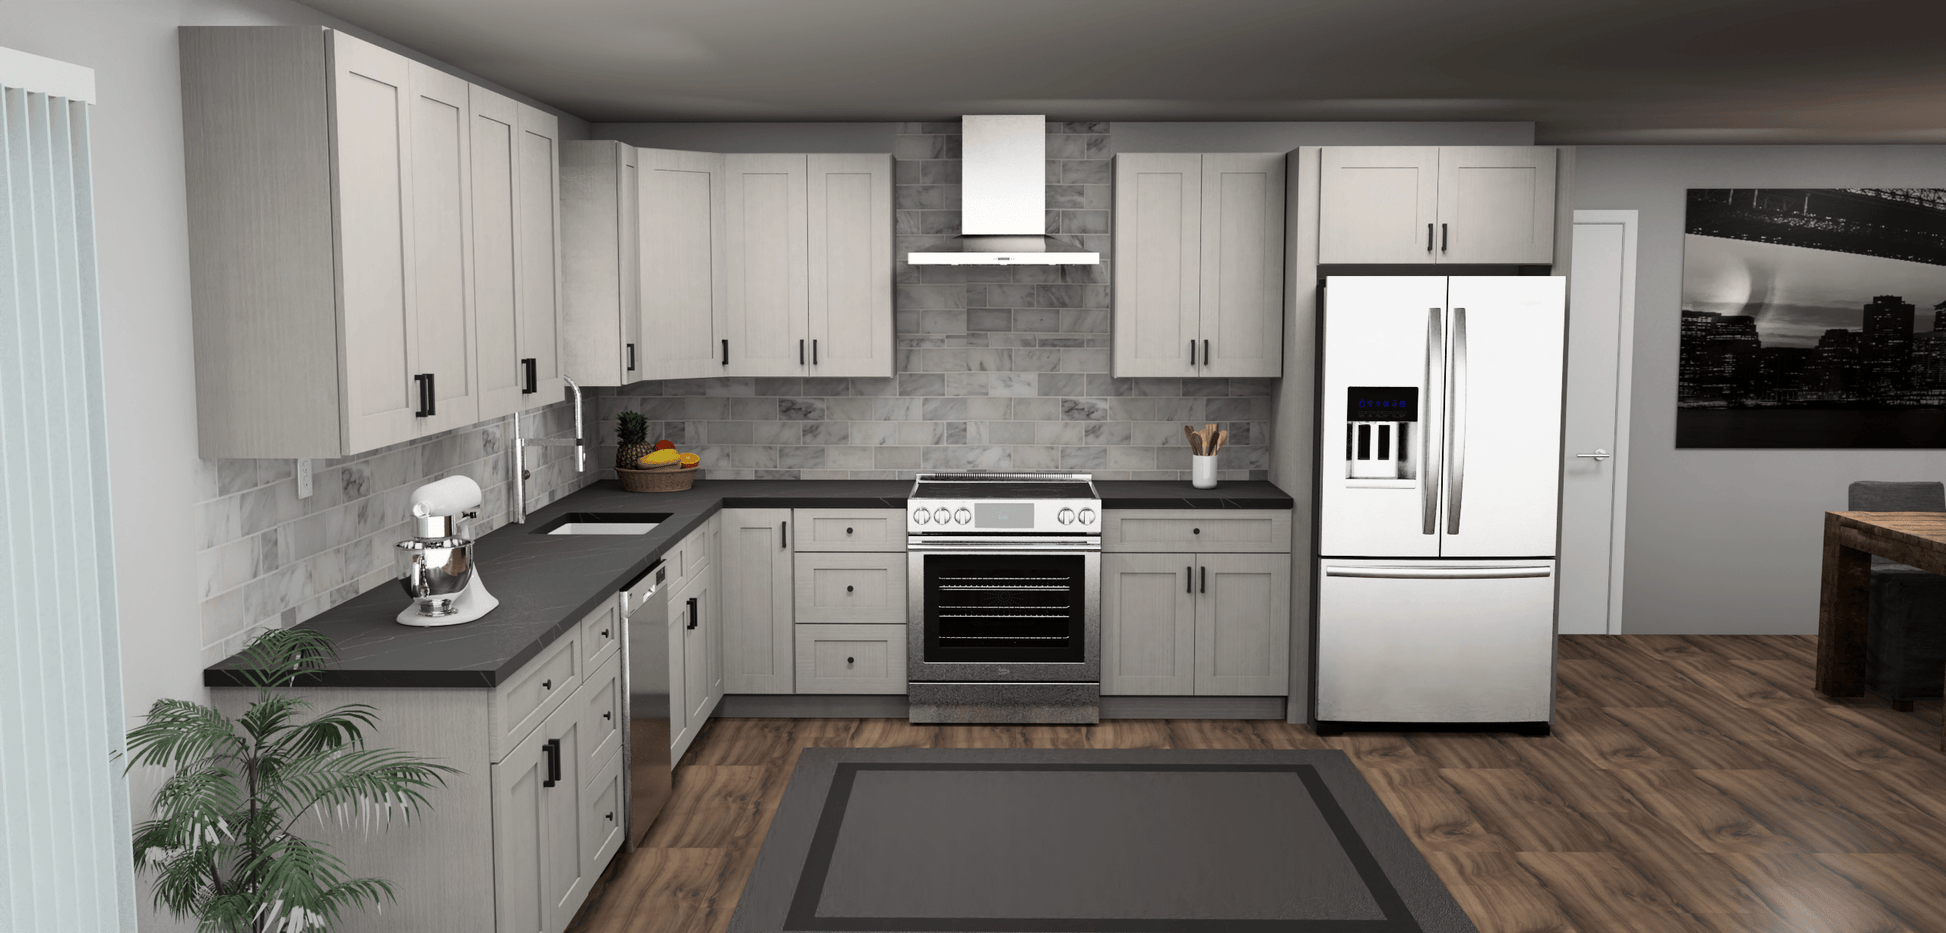 Fabuwood Allure Galaxy Horizon 12 x 13 L Shaped Kitchen Front Layout Photo